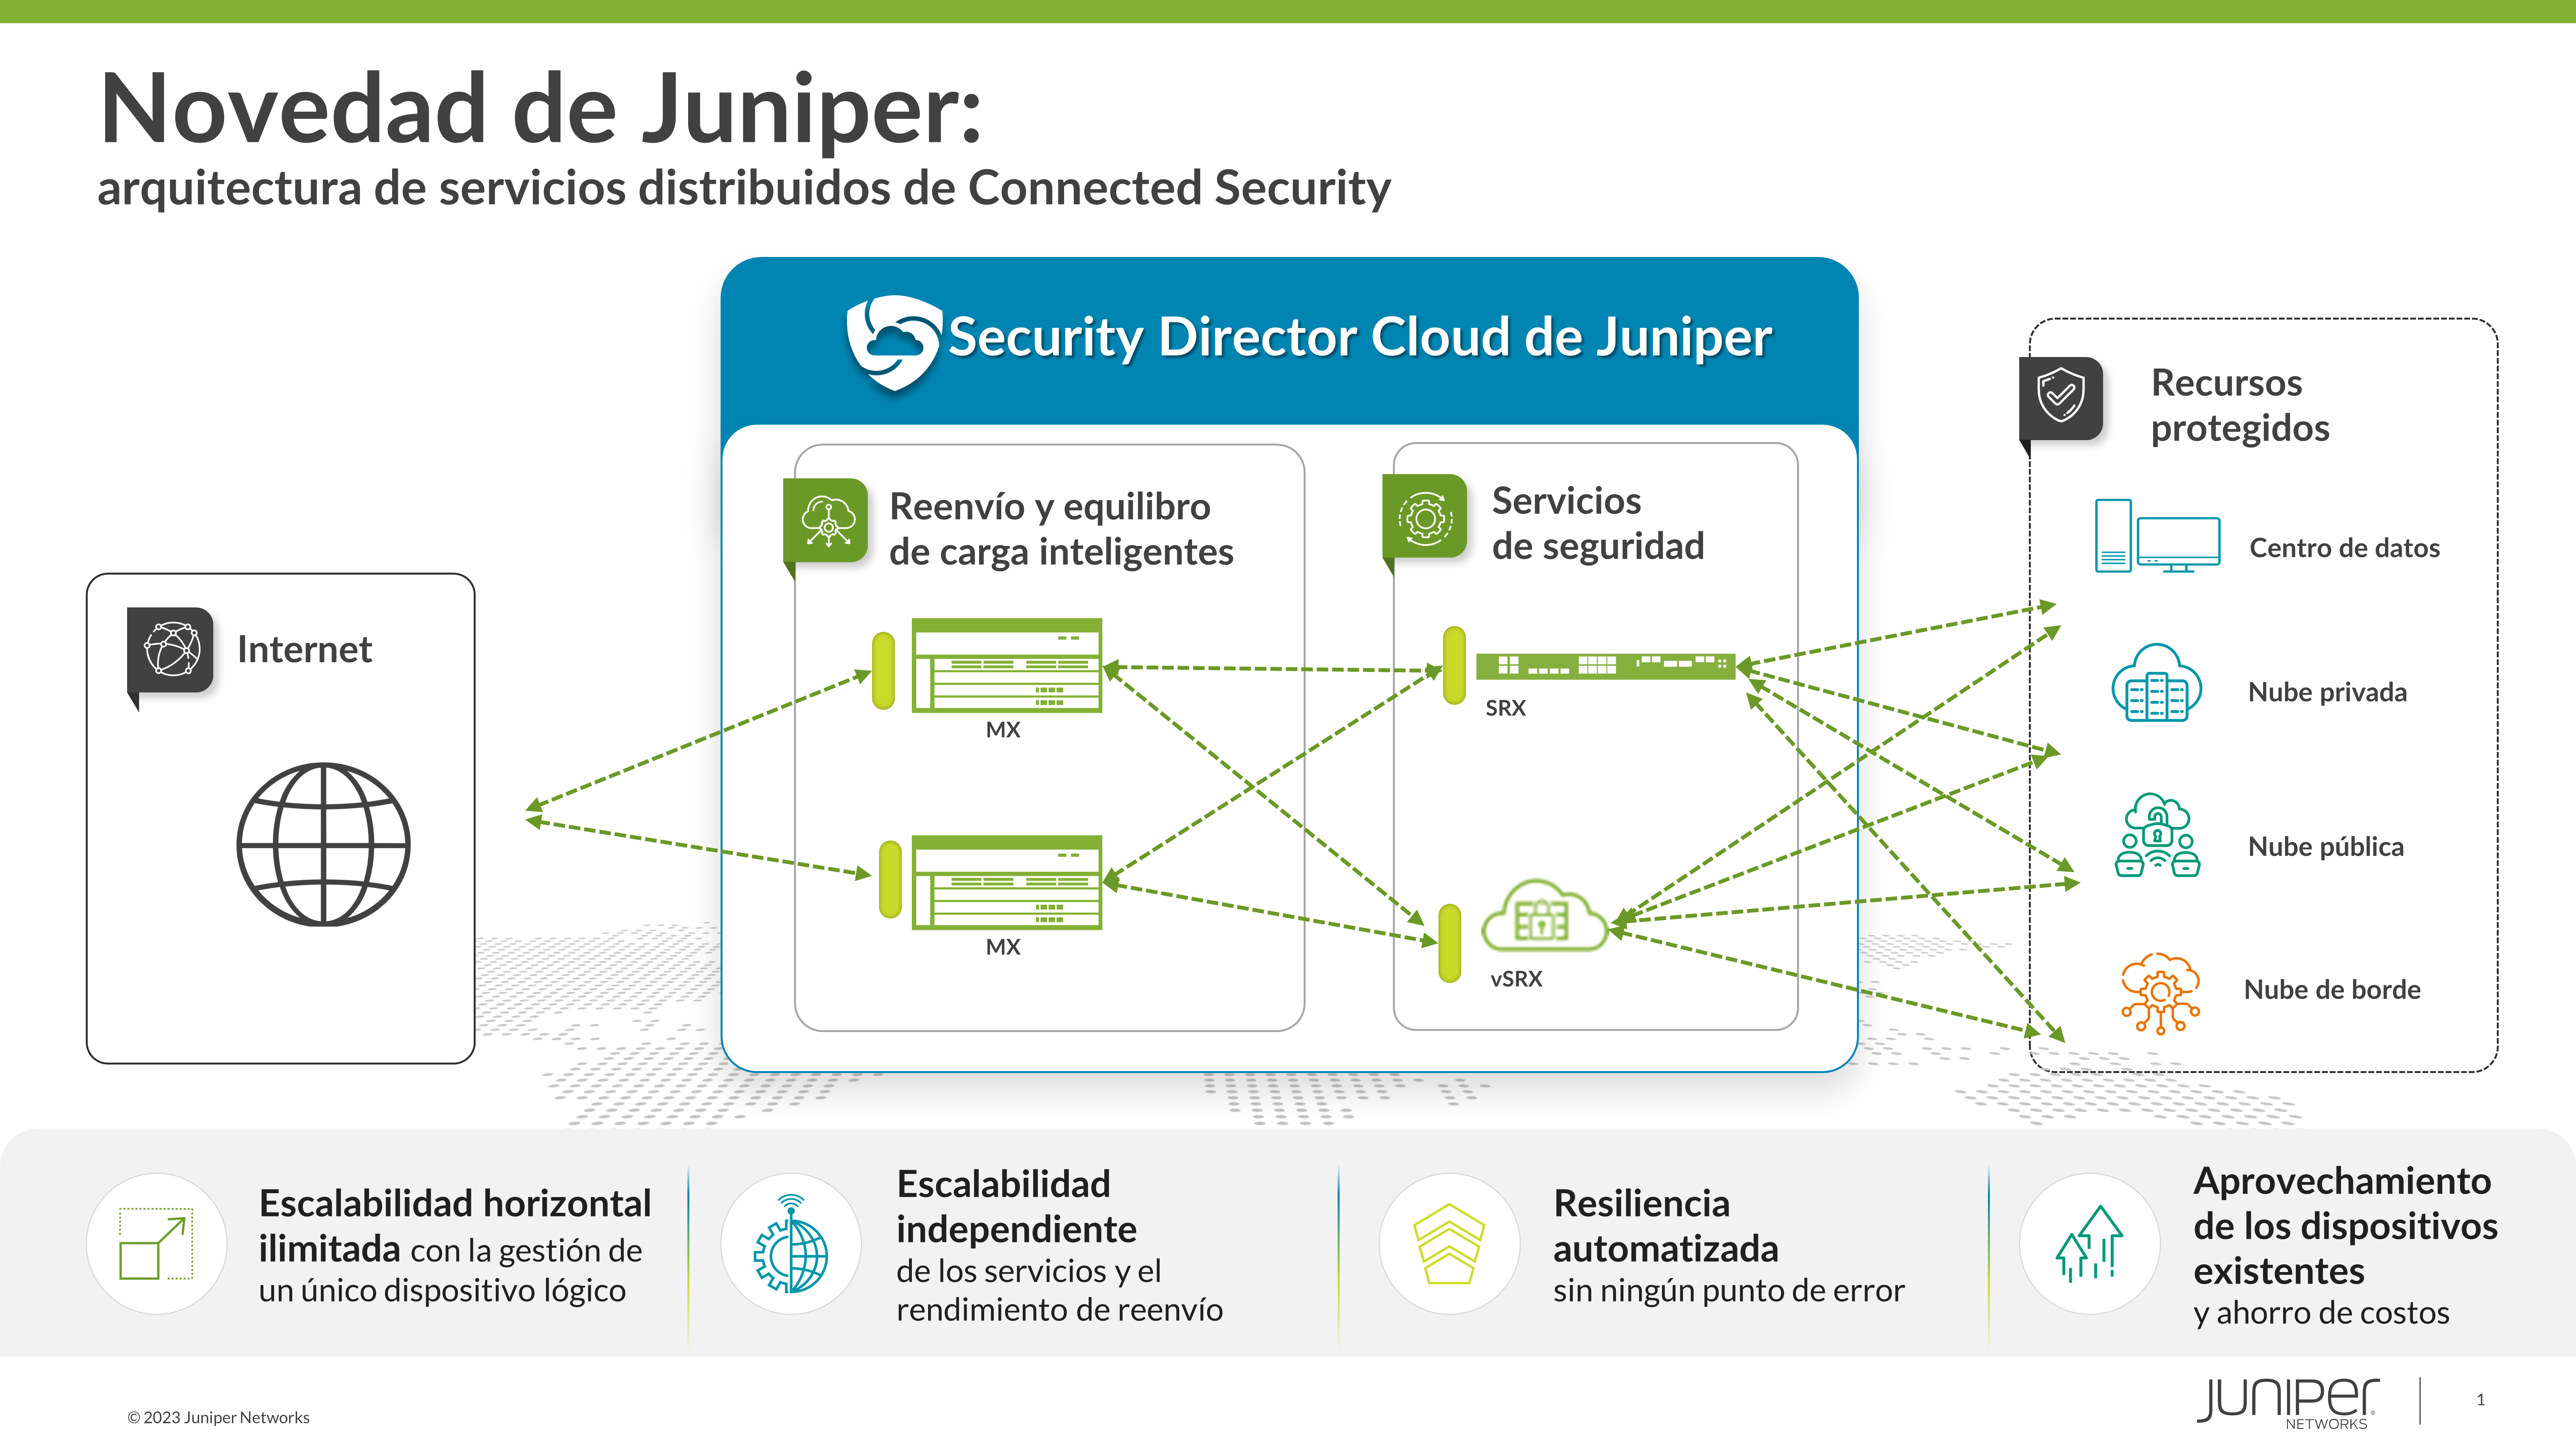 Juniper Networks revoluciona la seguridad de los centros de datos modernos con la primera arquitectura de servicios distribuidos del sector